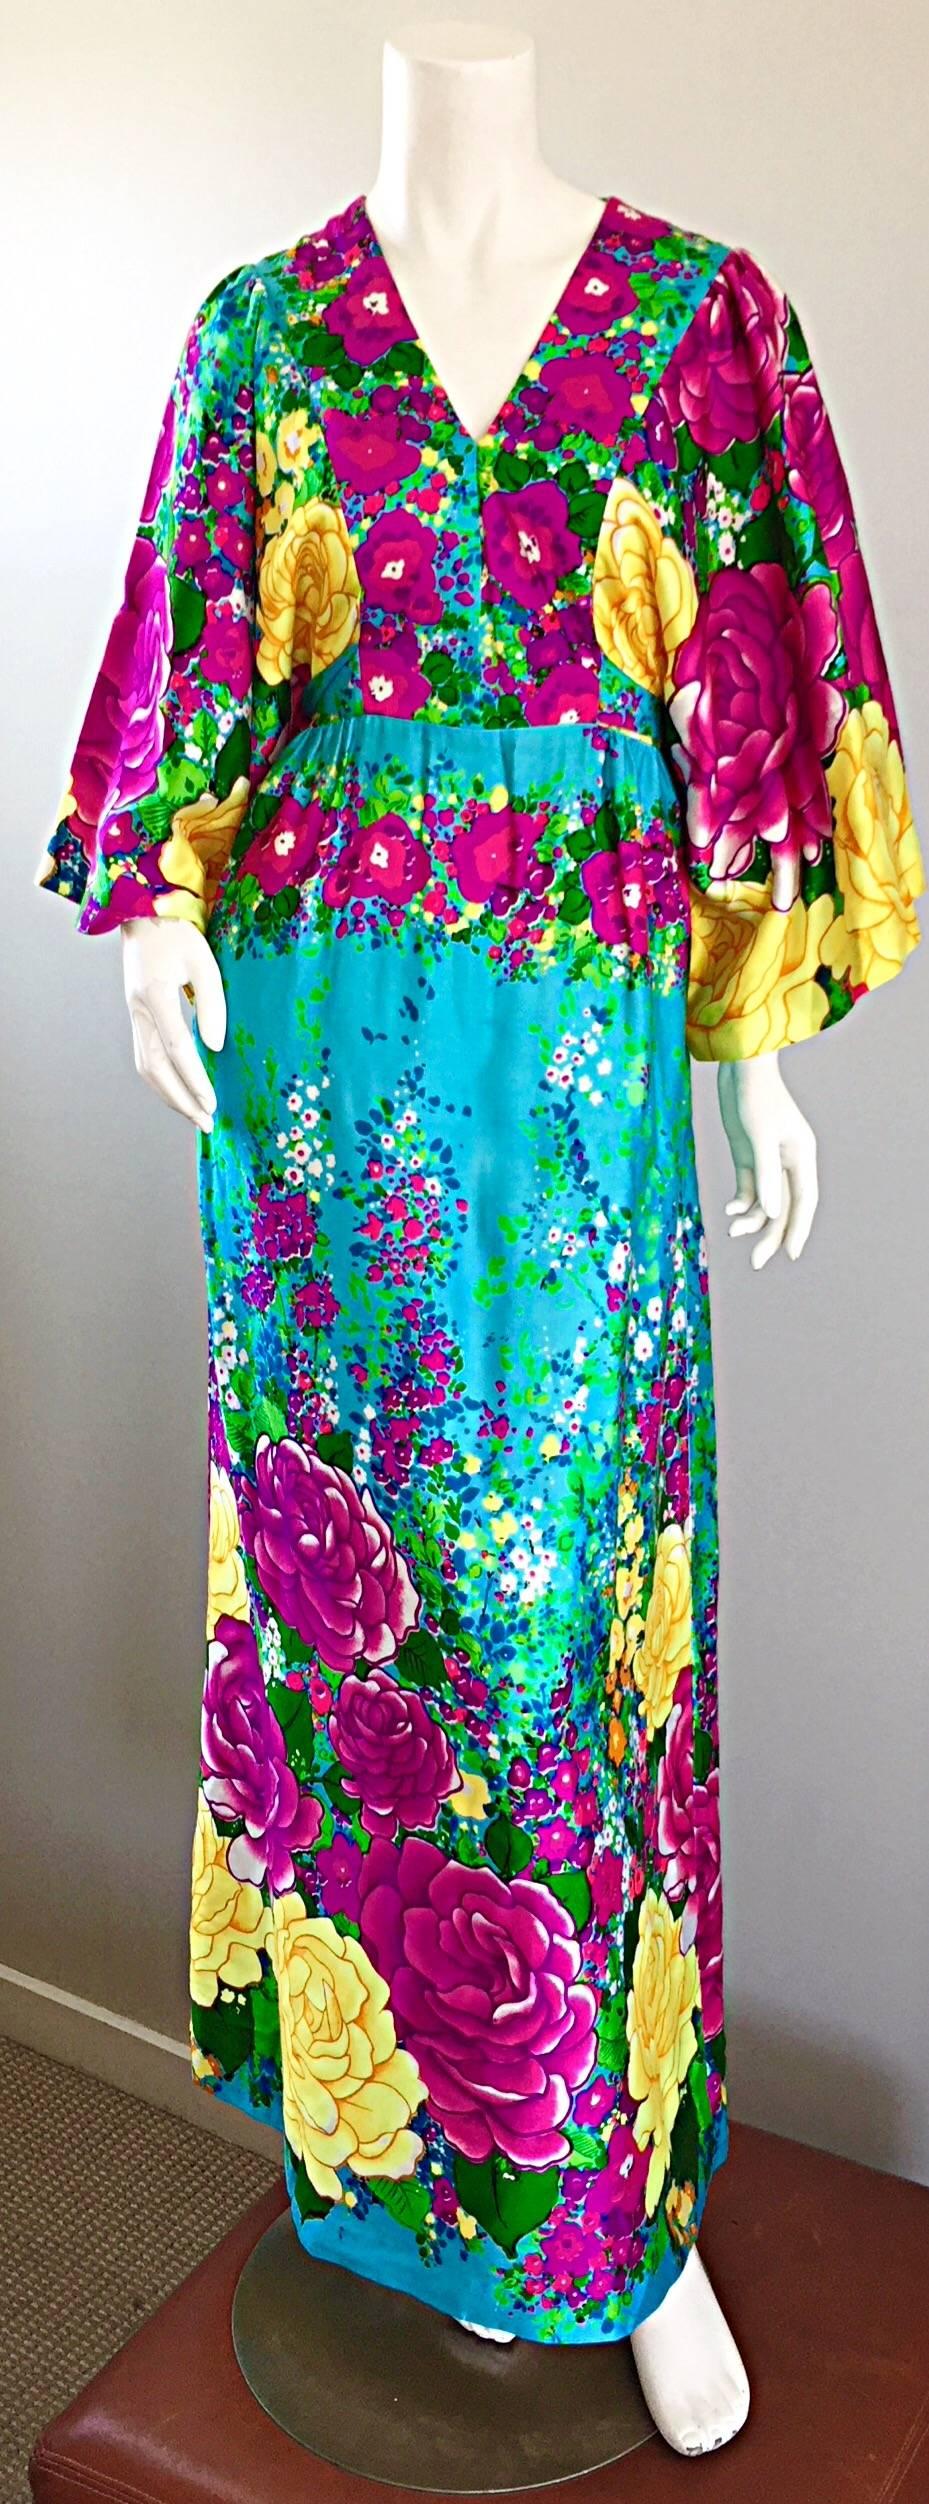 Erstaunlich Vintage 1970s HILO HATTIE von EVELYN MARGOLIS Kimono-Stil Maxi Kleid / Hawaii Kaftan! Unglaublich leuchtende Farben, mit einem schicken Blumendruck in blau, türkis, pink, fuchsia, lila, grün, limone, gelb, etc. Der beigefügte Gürtel wird